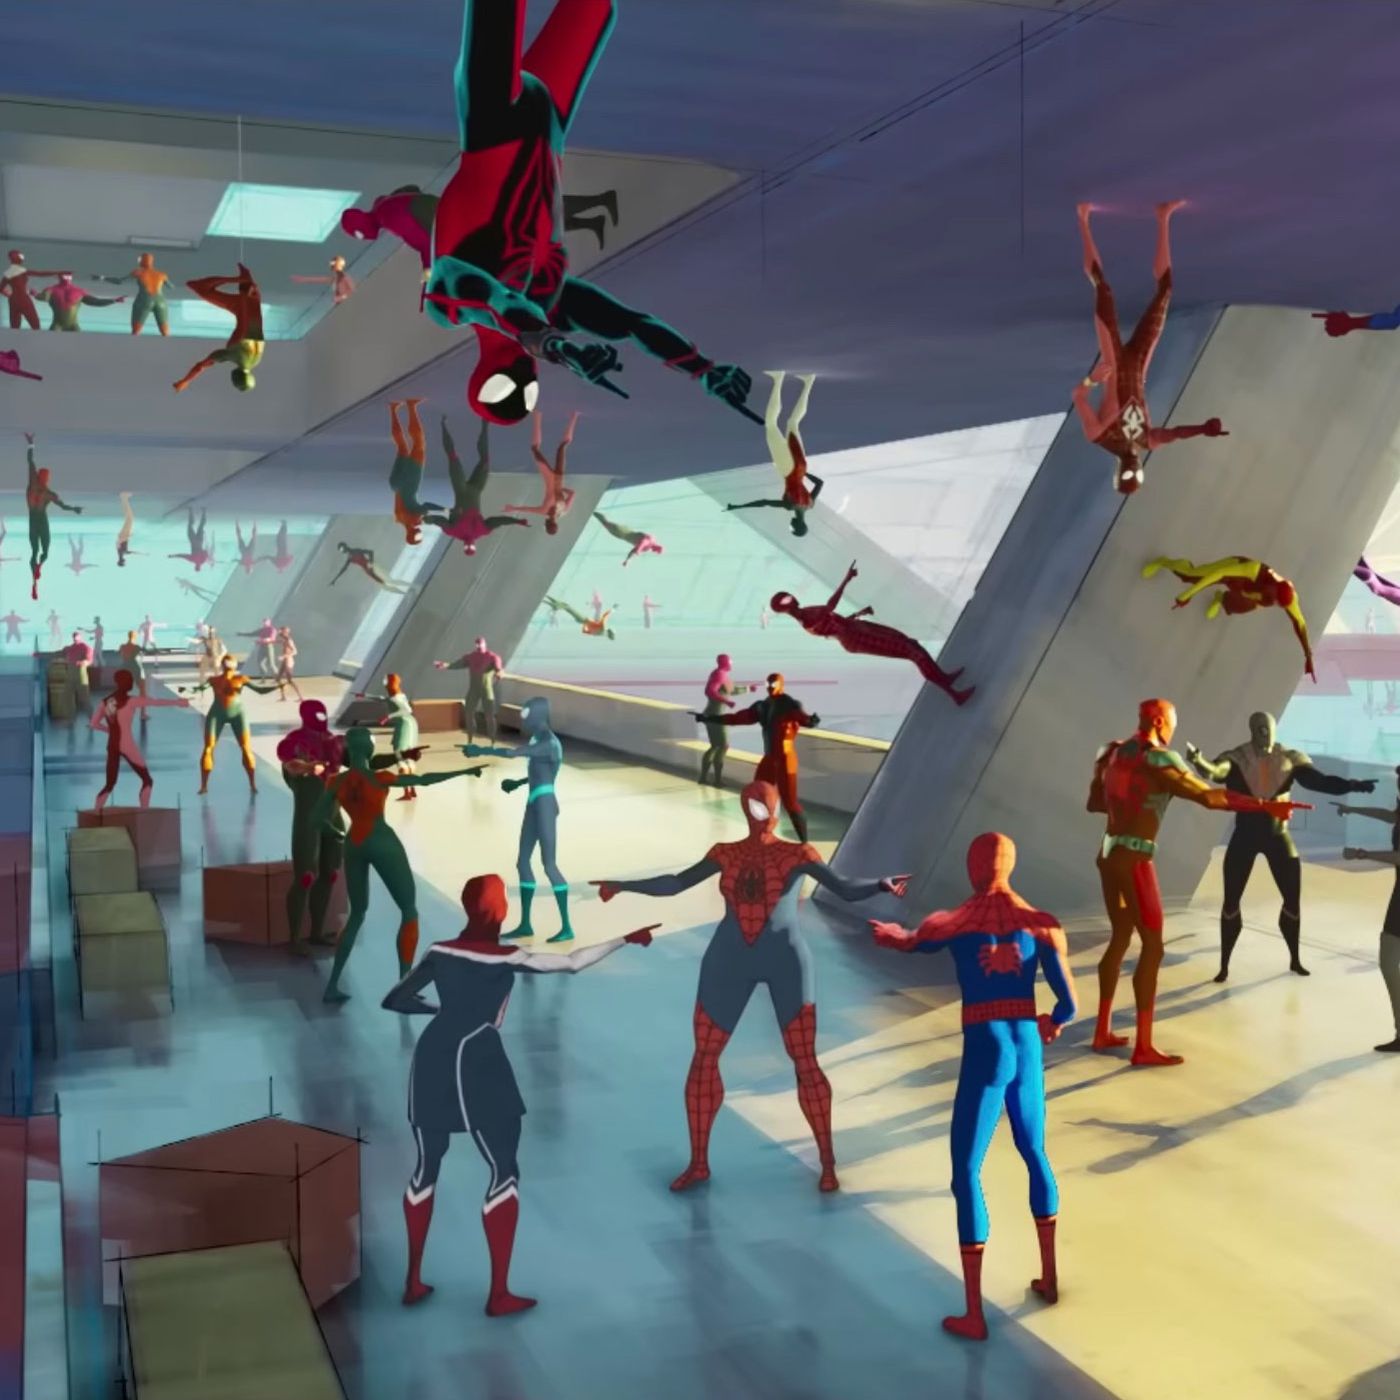 Spider-Man: Beyond the Spider-Verse taken off Sony's release